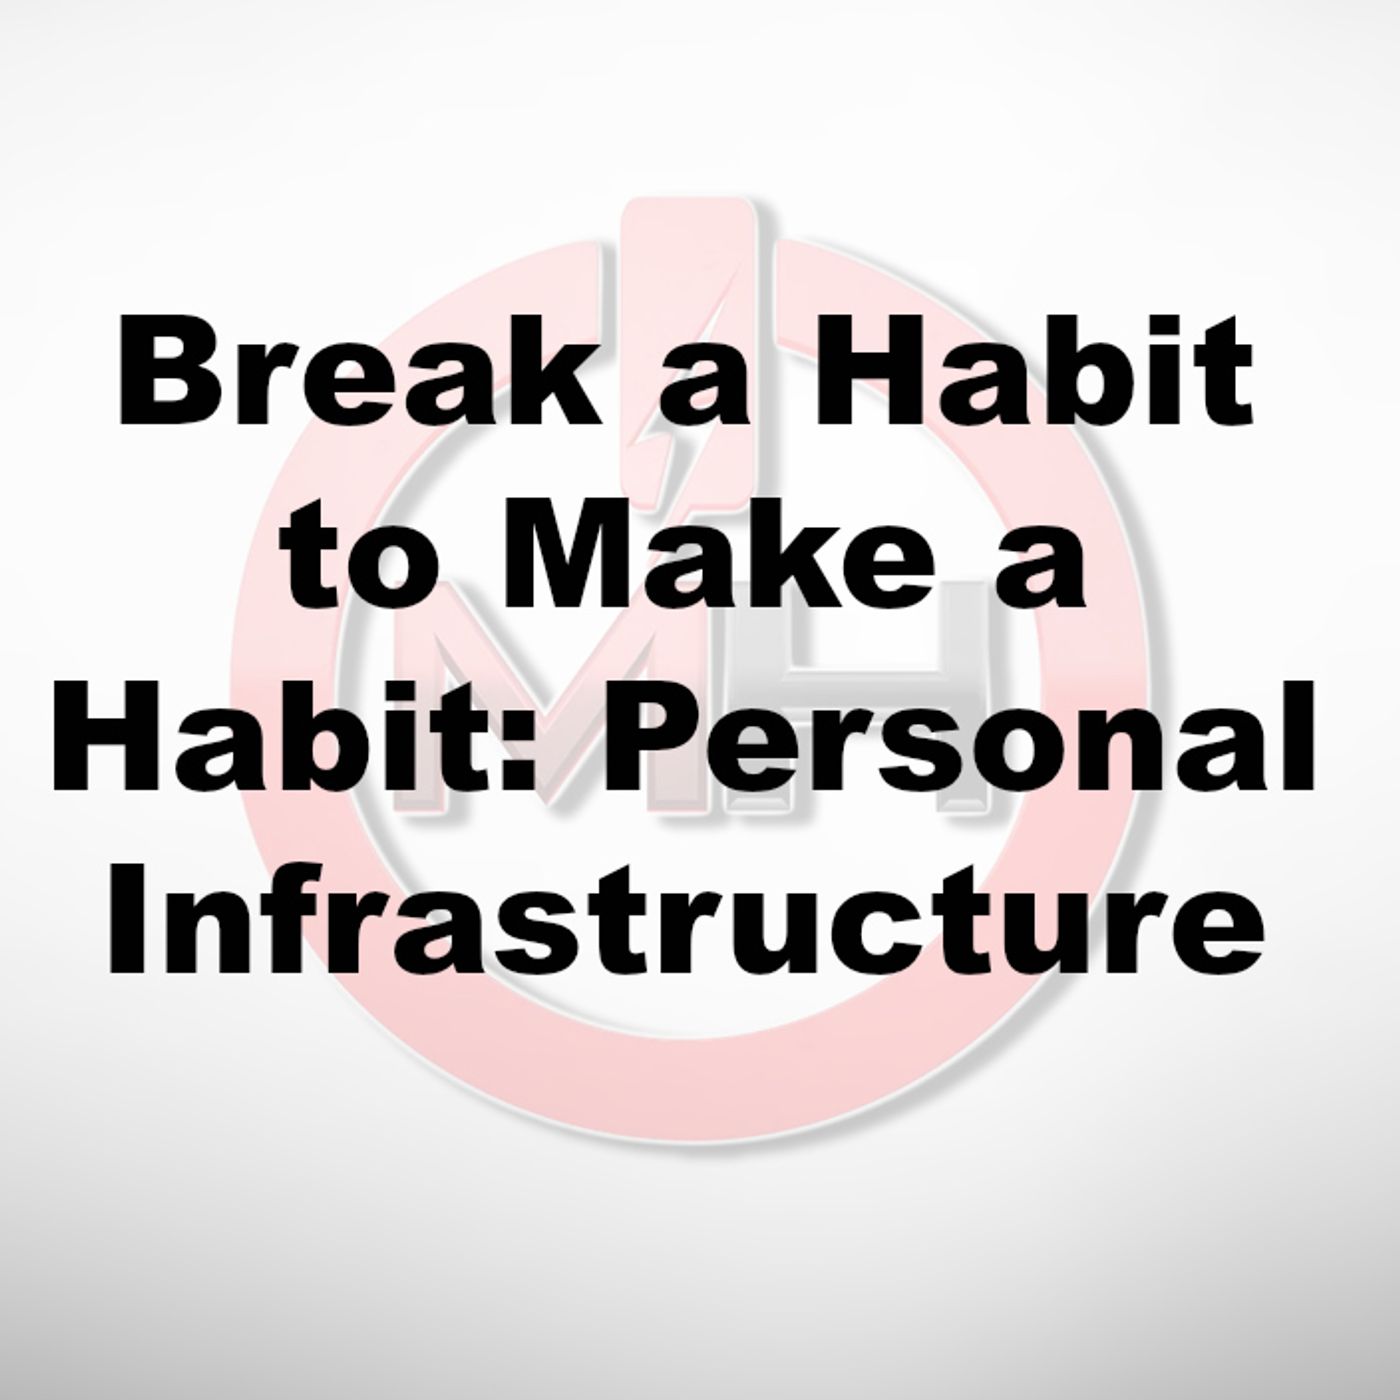 Break a Habit to Make a Habit